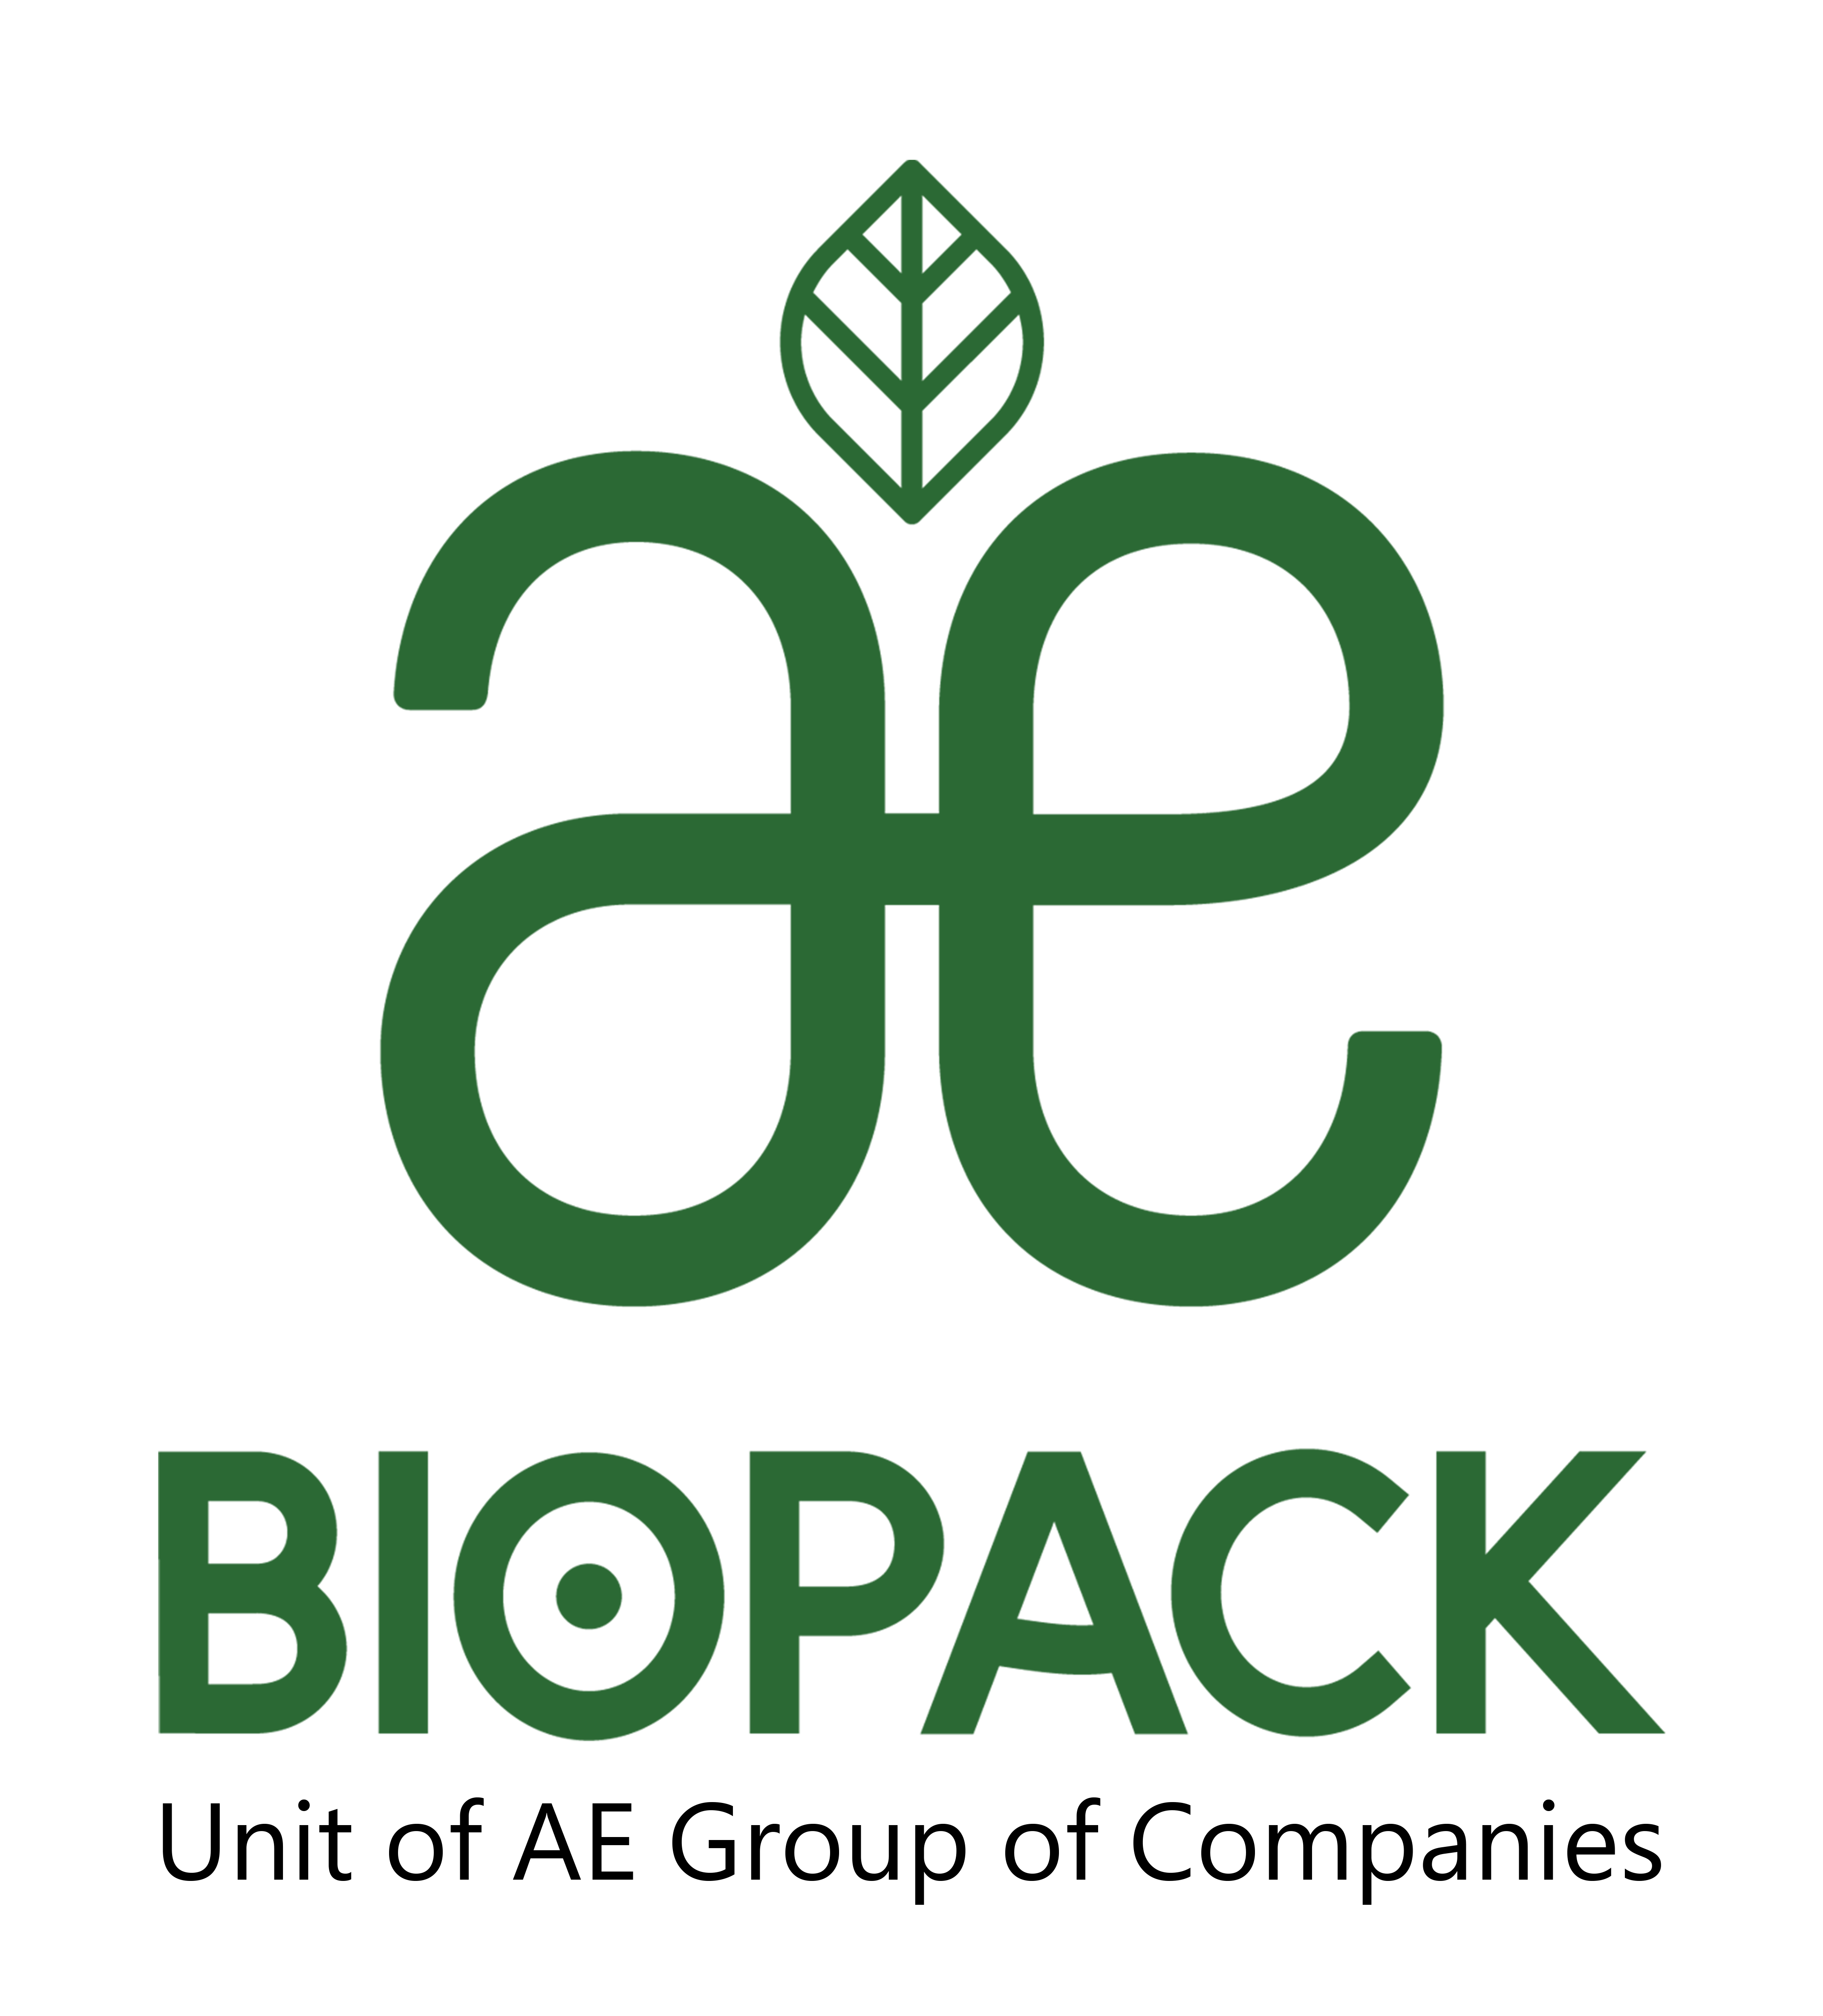 AE Biopack